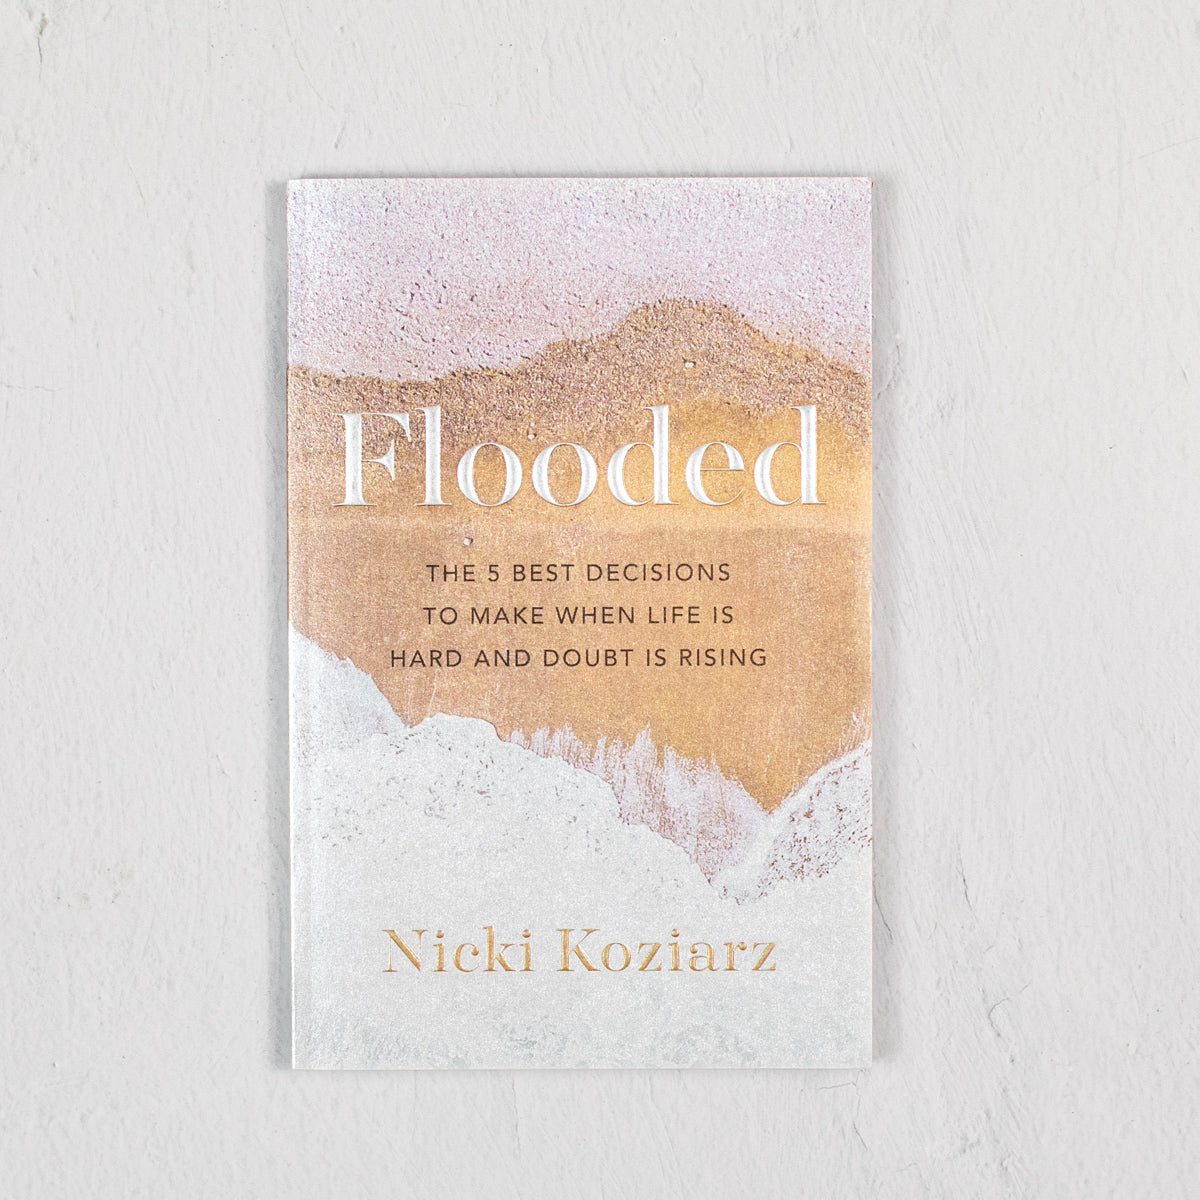 Flooded by Nicki Koziarz